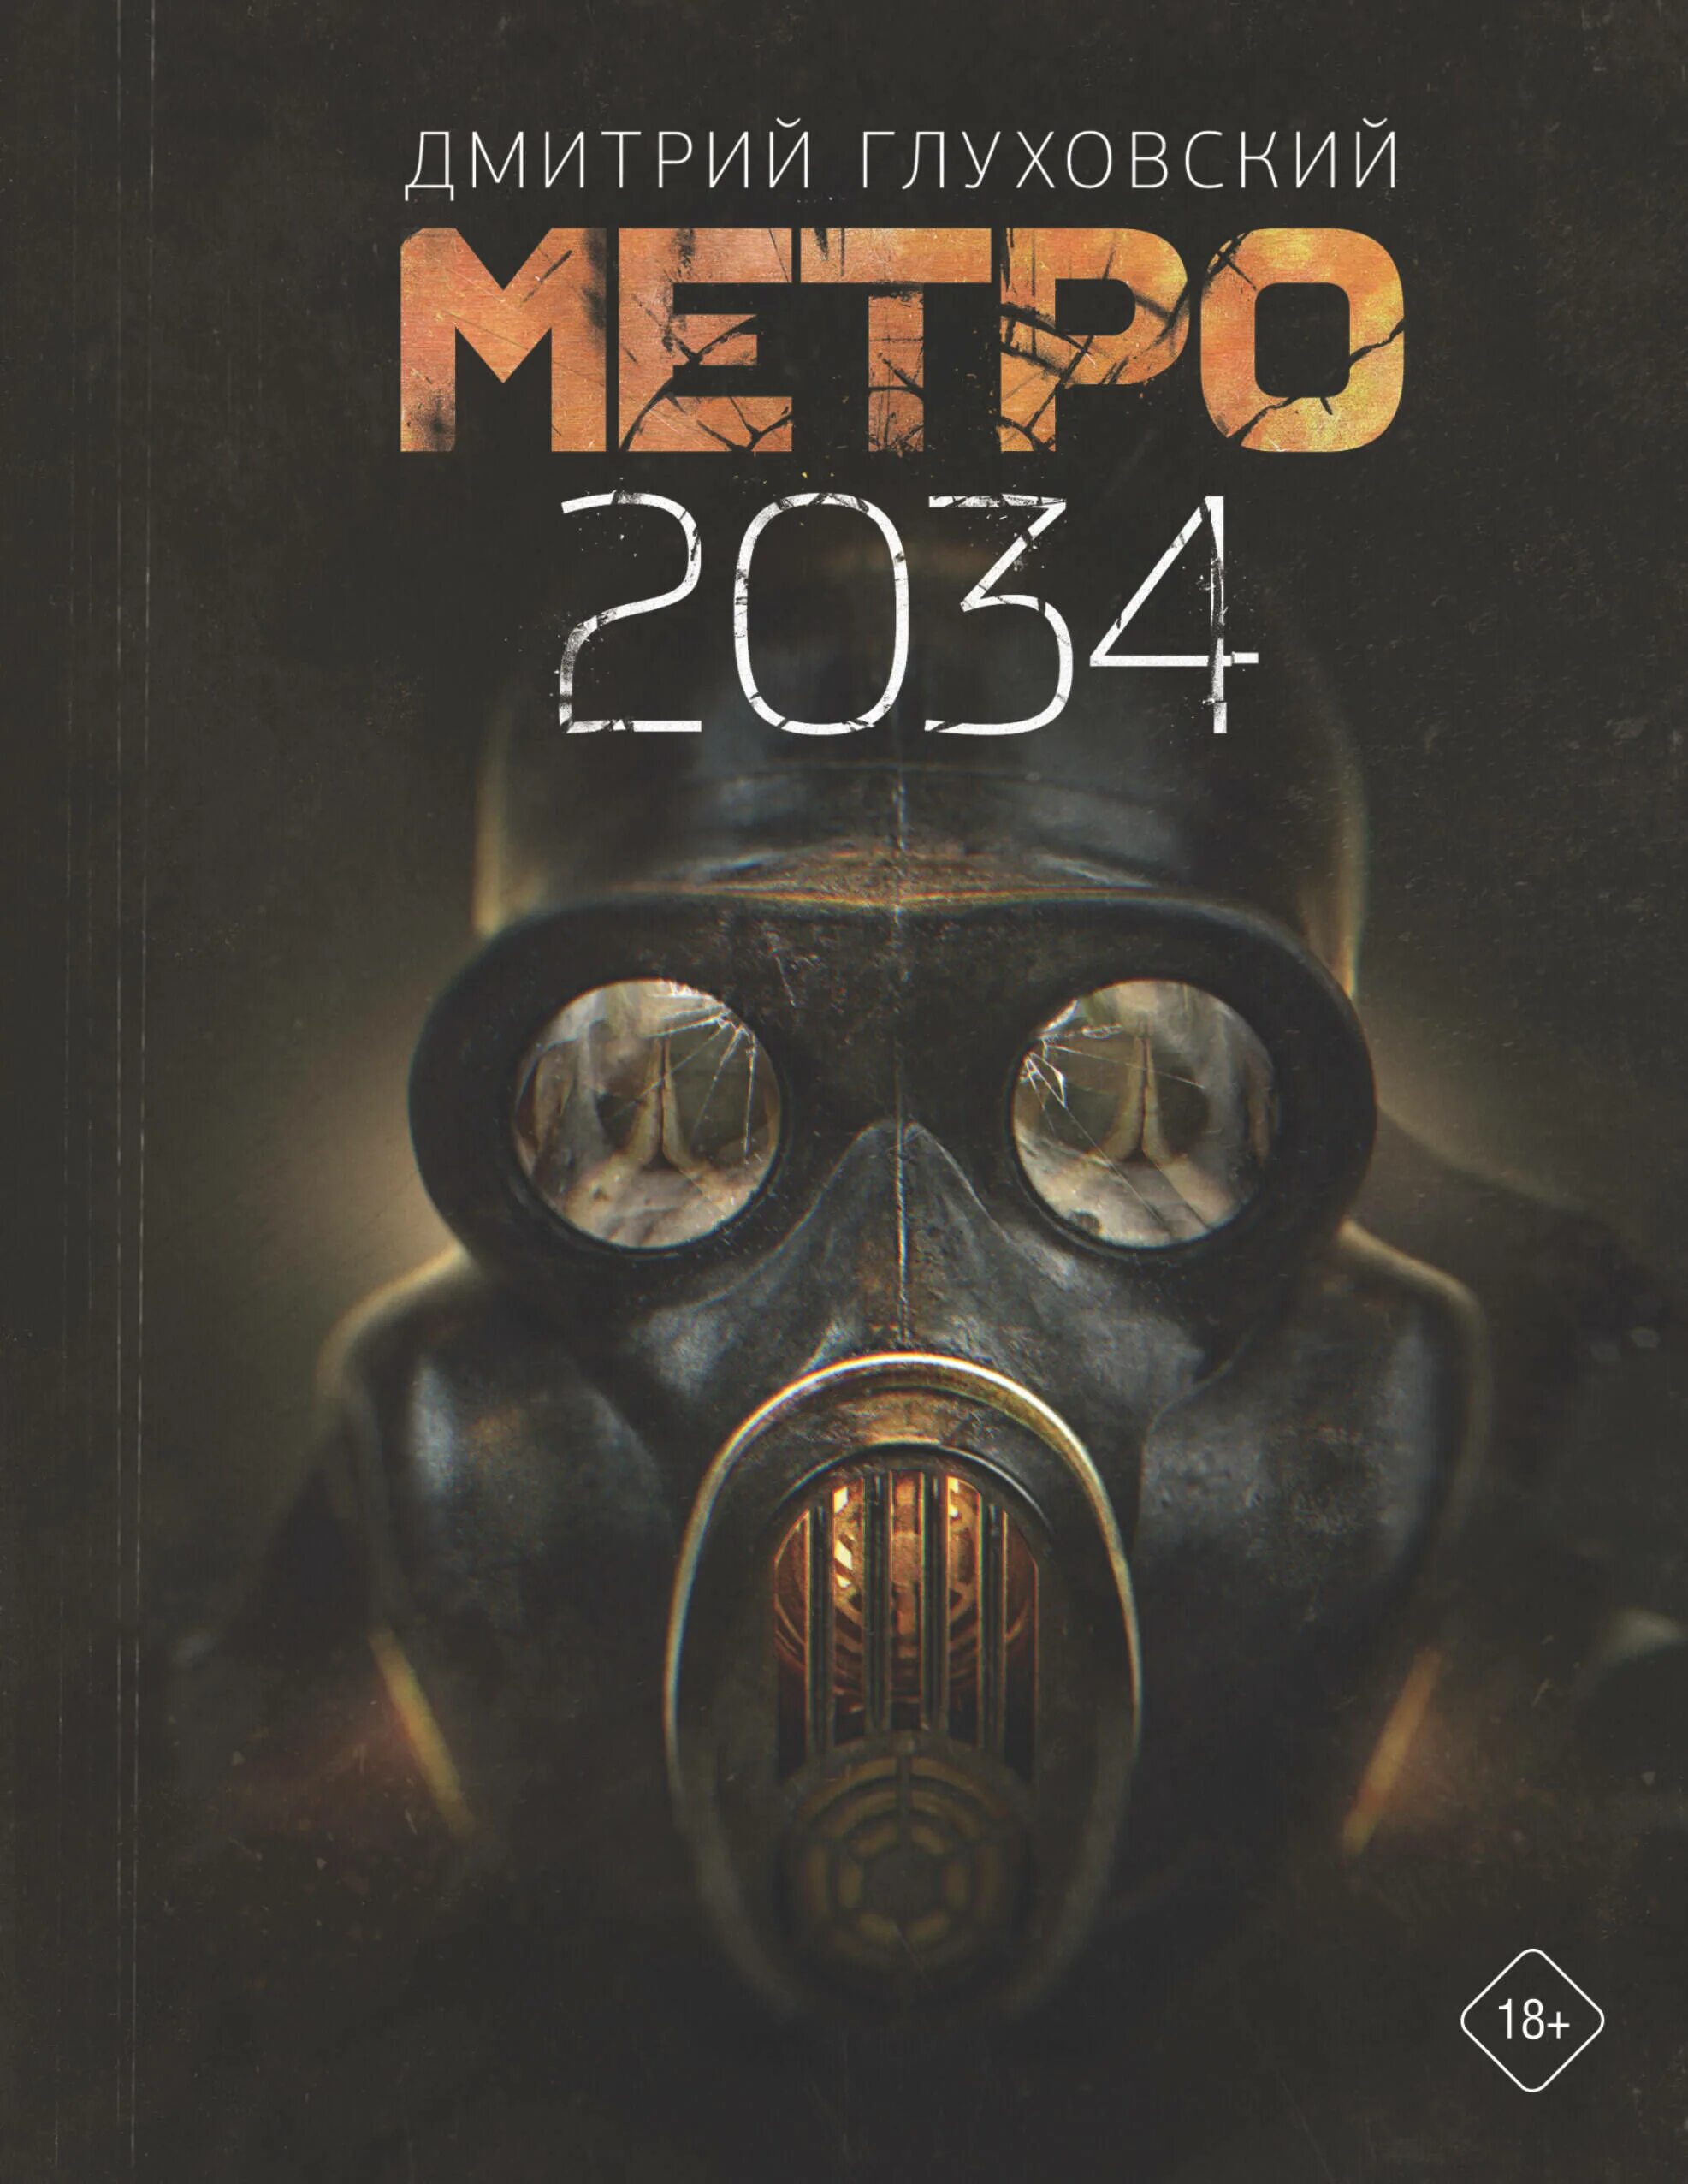 2034 год книга. Глуховский д. "метро 2035".